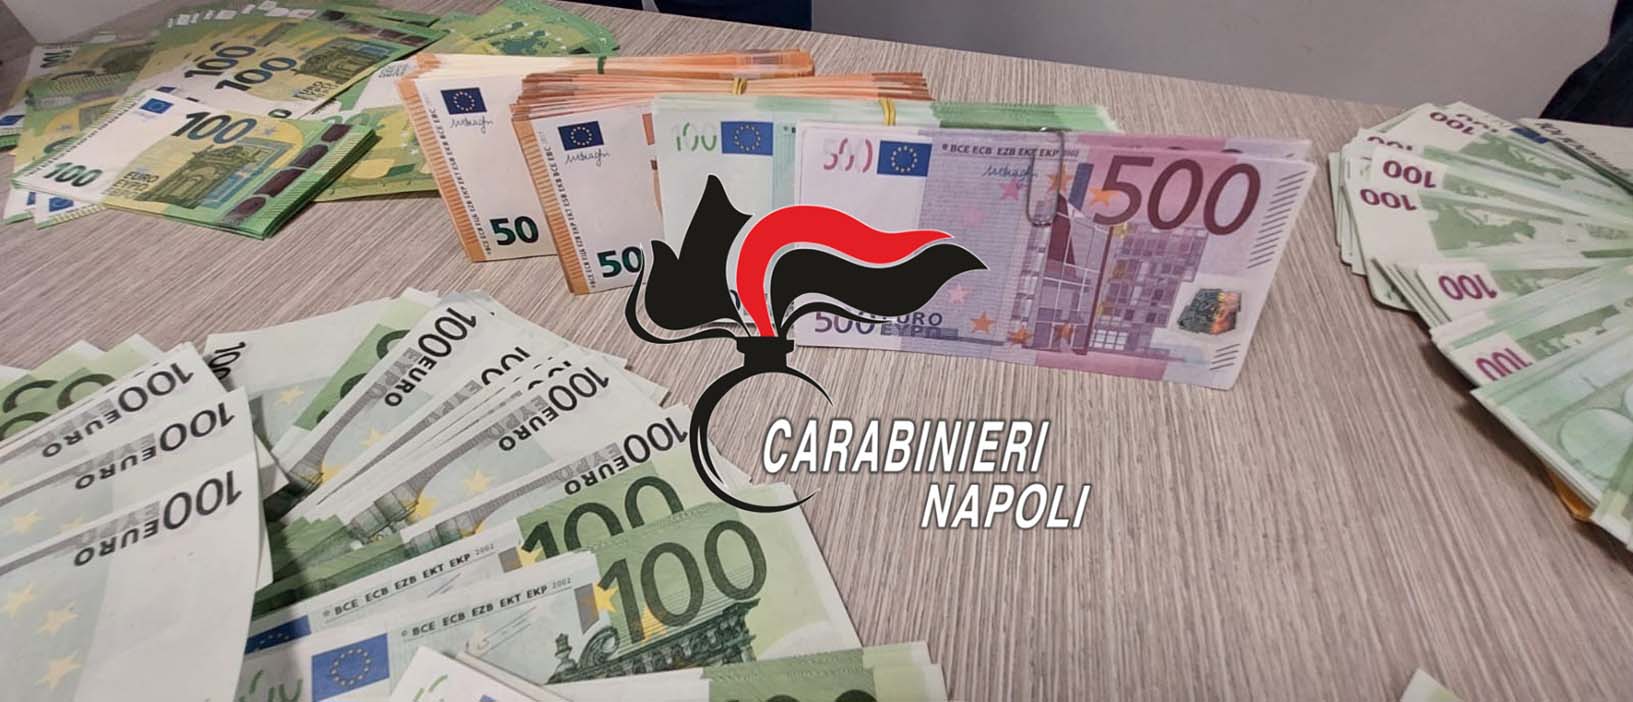 napoli-sequestro-banconote-false-poggioreale